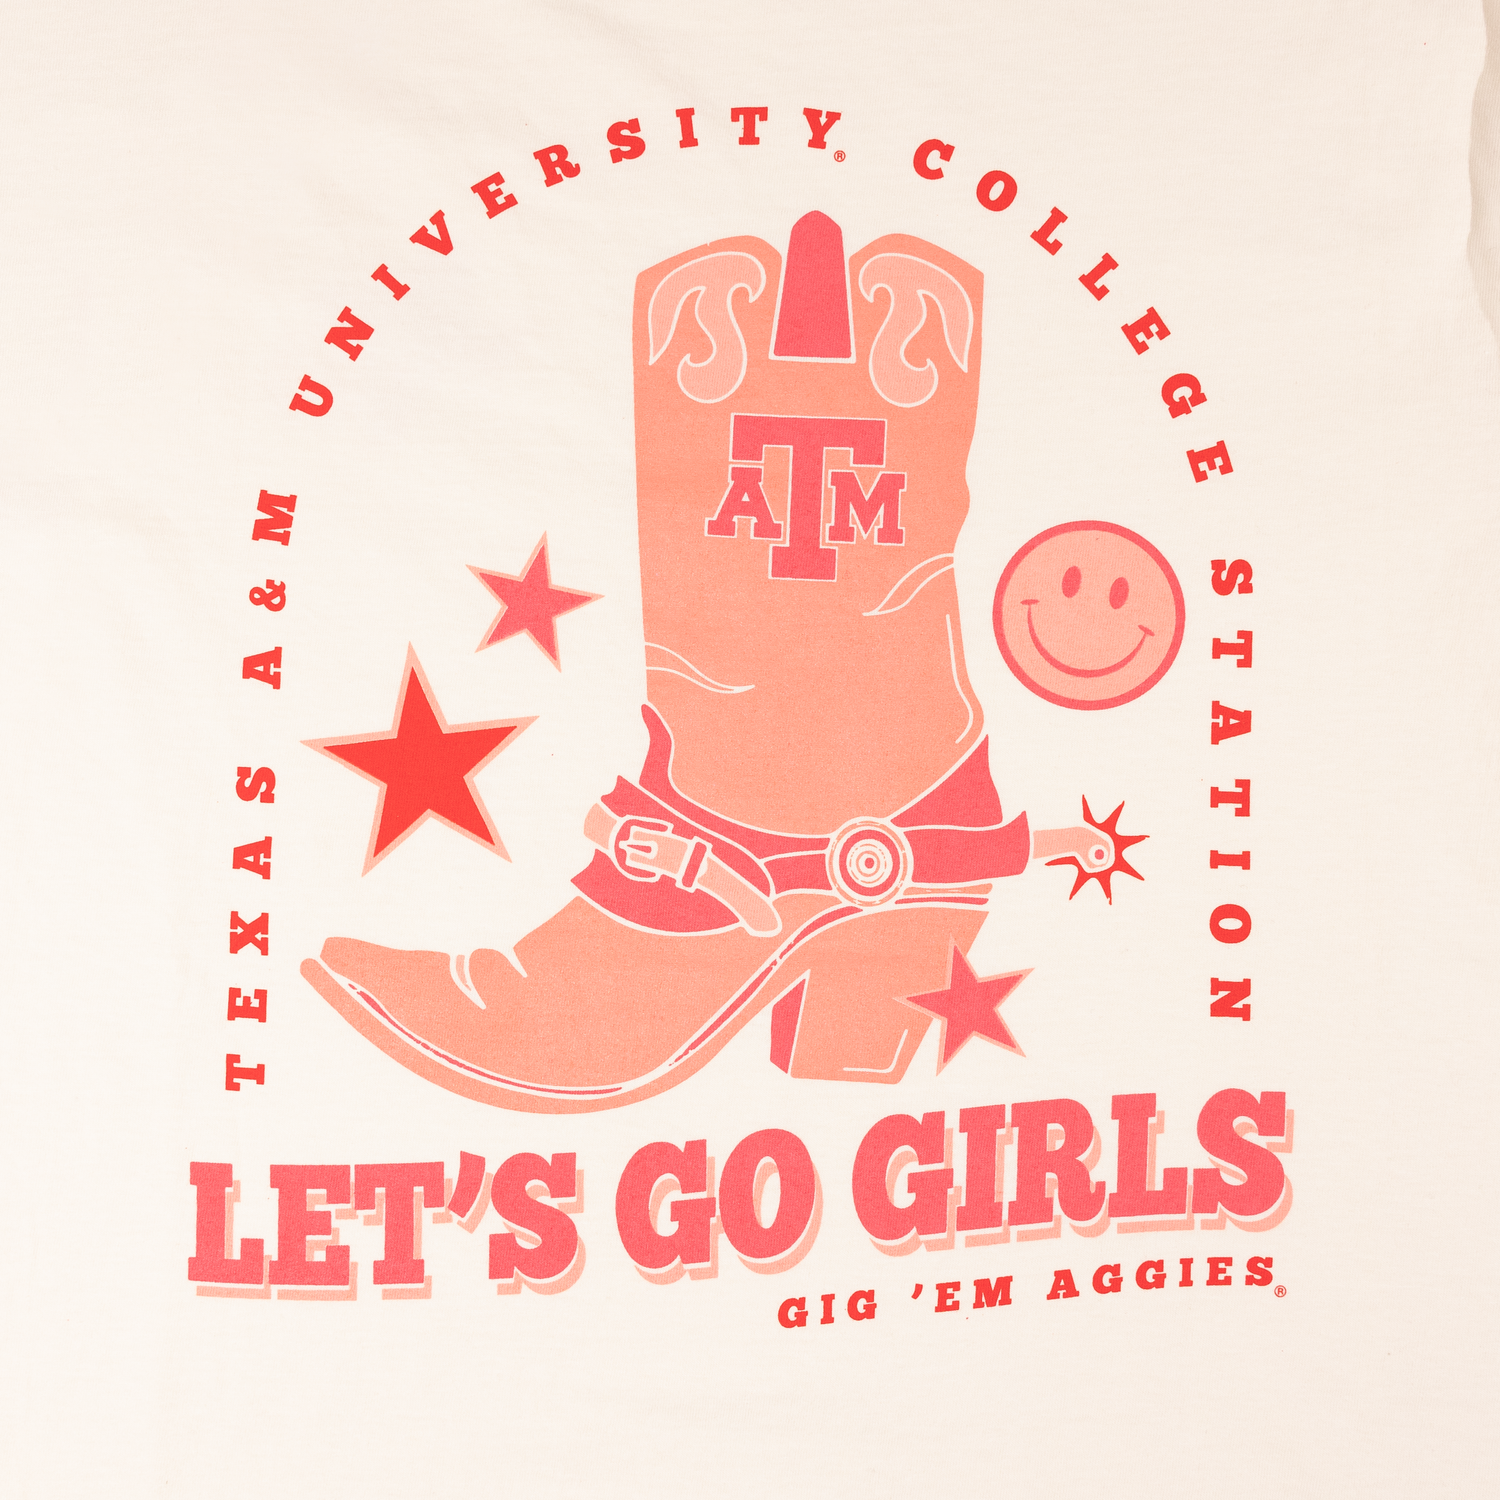 Texas A&M Let's Go Girls Parchment T-Shirt